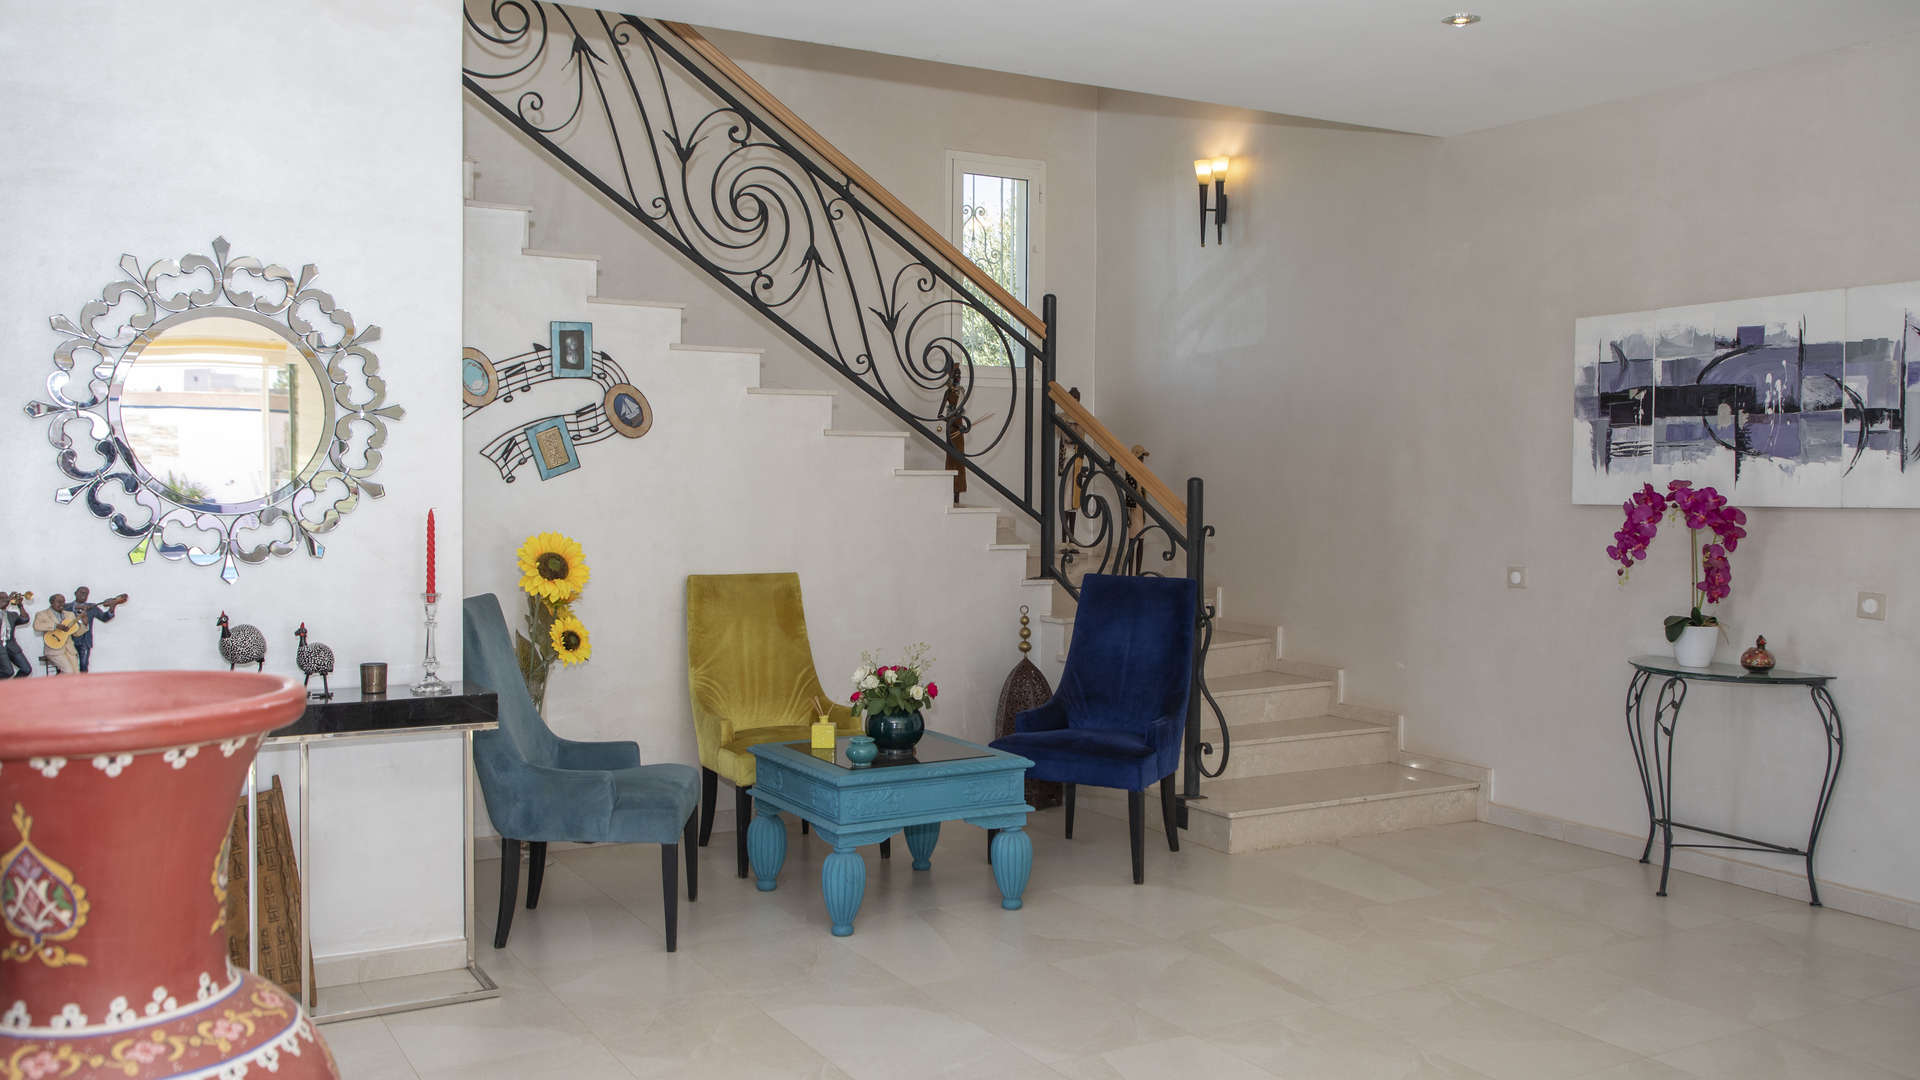 Location de vacances,Villa,Villa 4 suites avec un jardin de 3000M2 arboré et avec piscine privée à 10 min. du Golf Amelkis à Marrakech,Marrakech,Route d'Ouarzazate